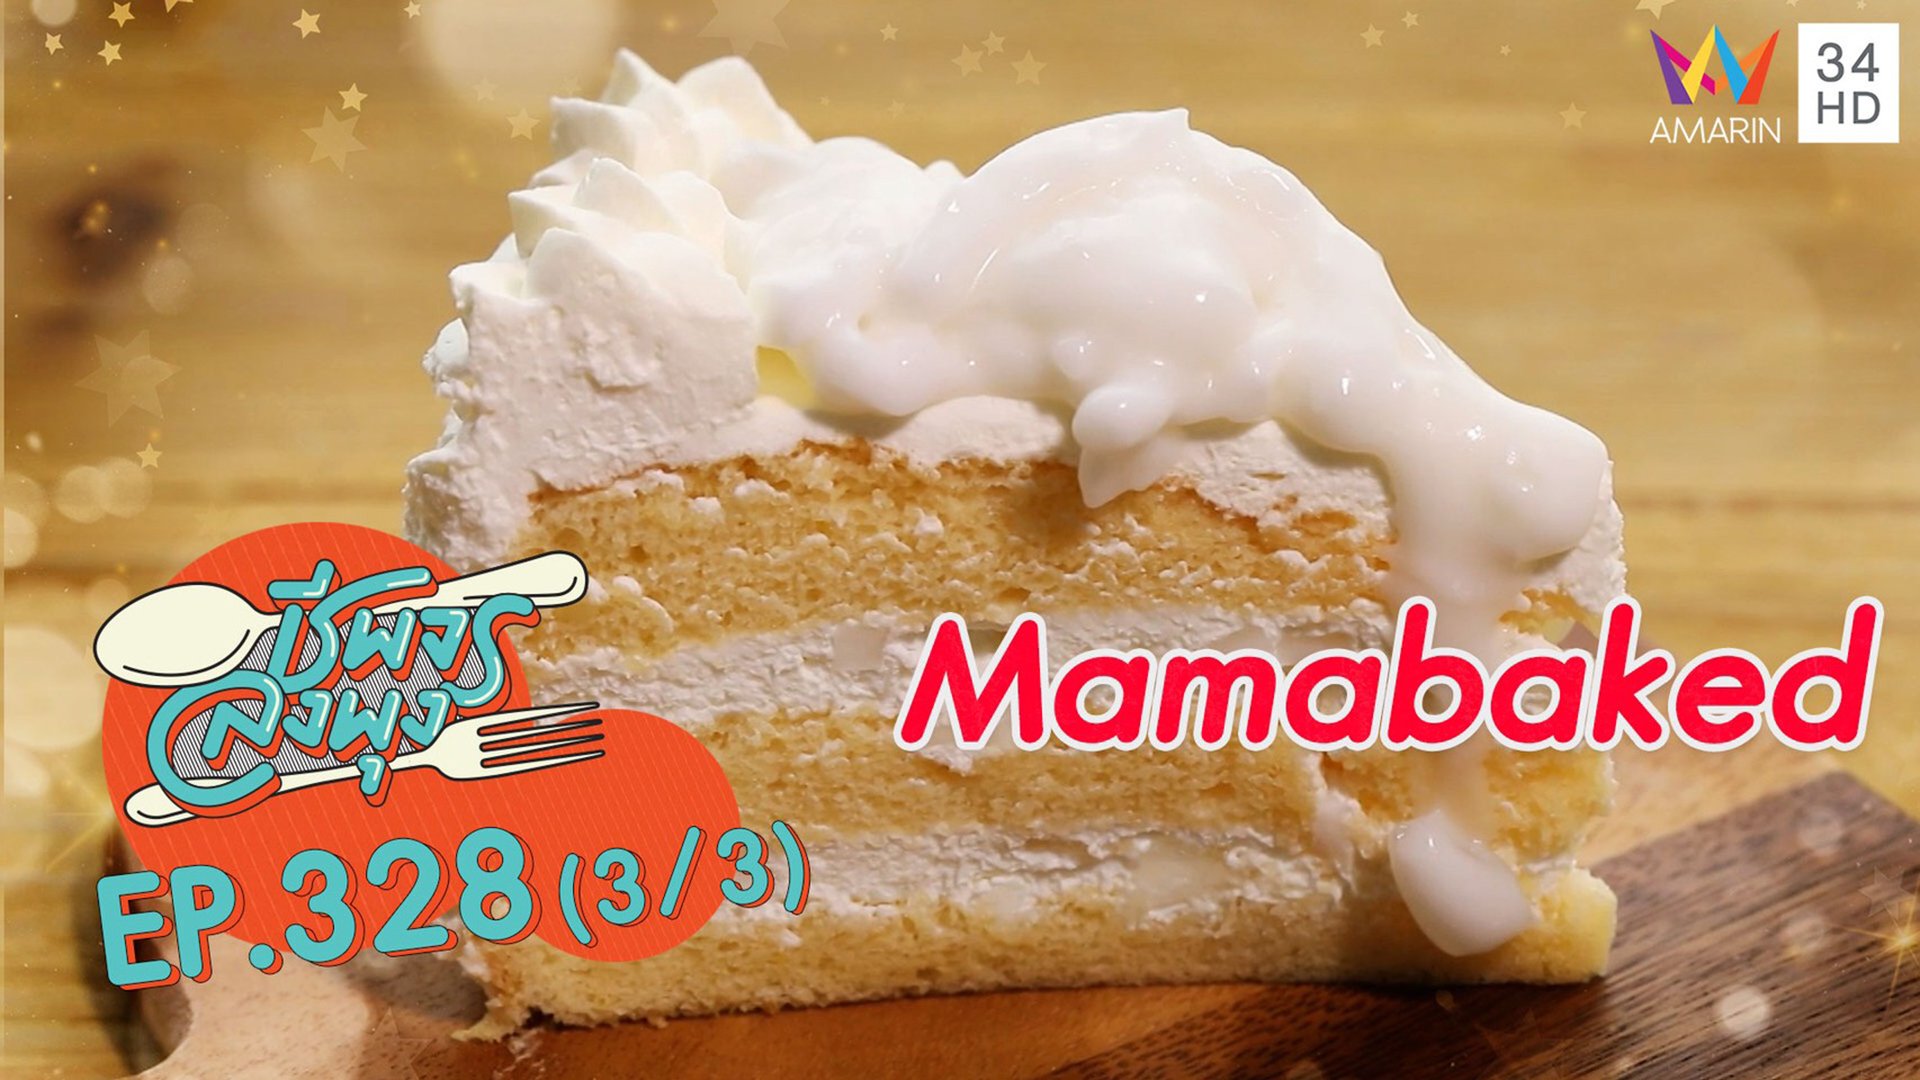 เค้กมะพร้าว หอม นุ่ม ชุ่มฉ่ำ ละมุนนสุดๆ @ ร้าน Mamabaked | ชีพจรลงพุง | 26 ก.ย. 64 (3/3) | AMARIN TVHD34